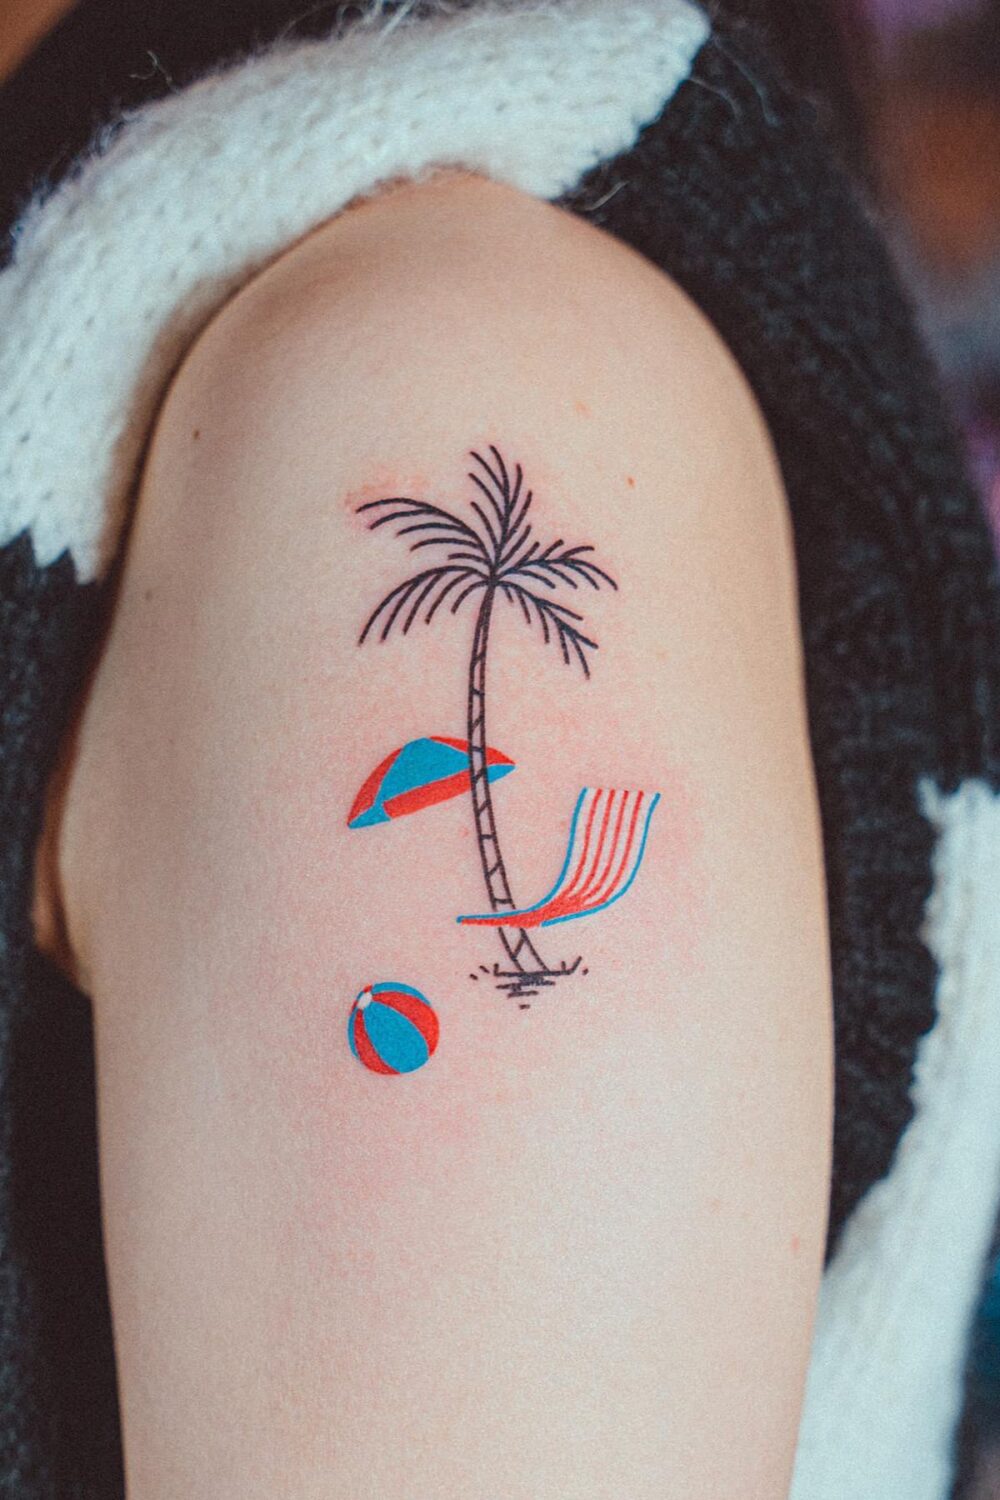 Palm tree tattoo